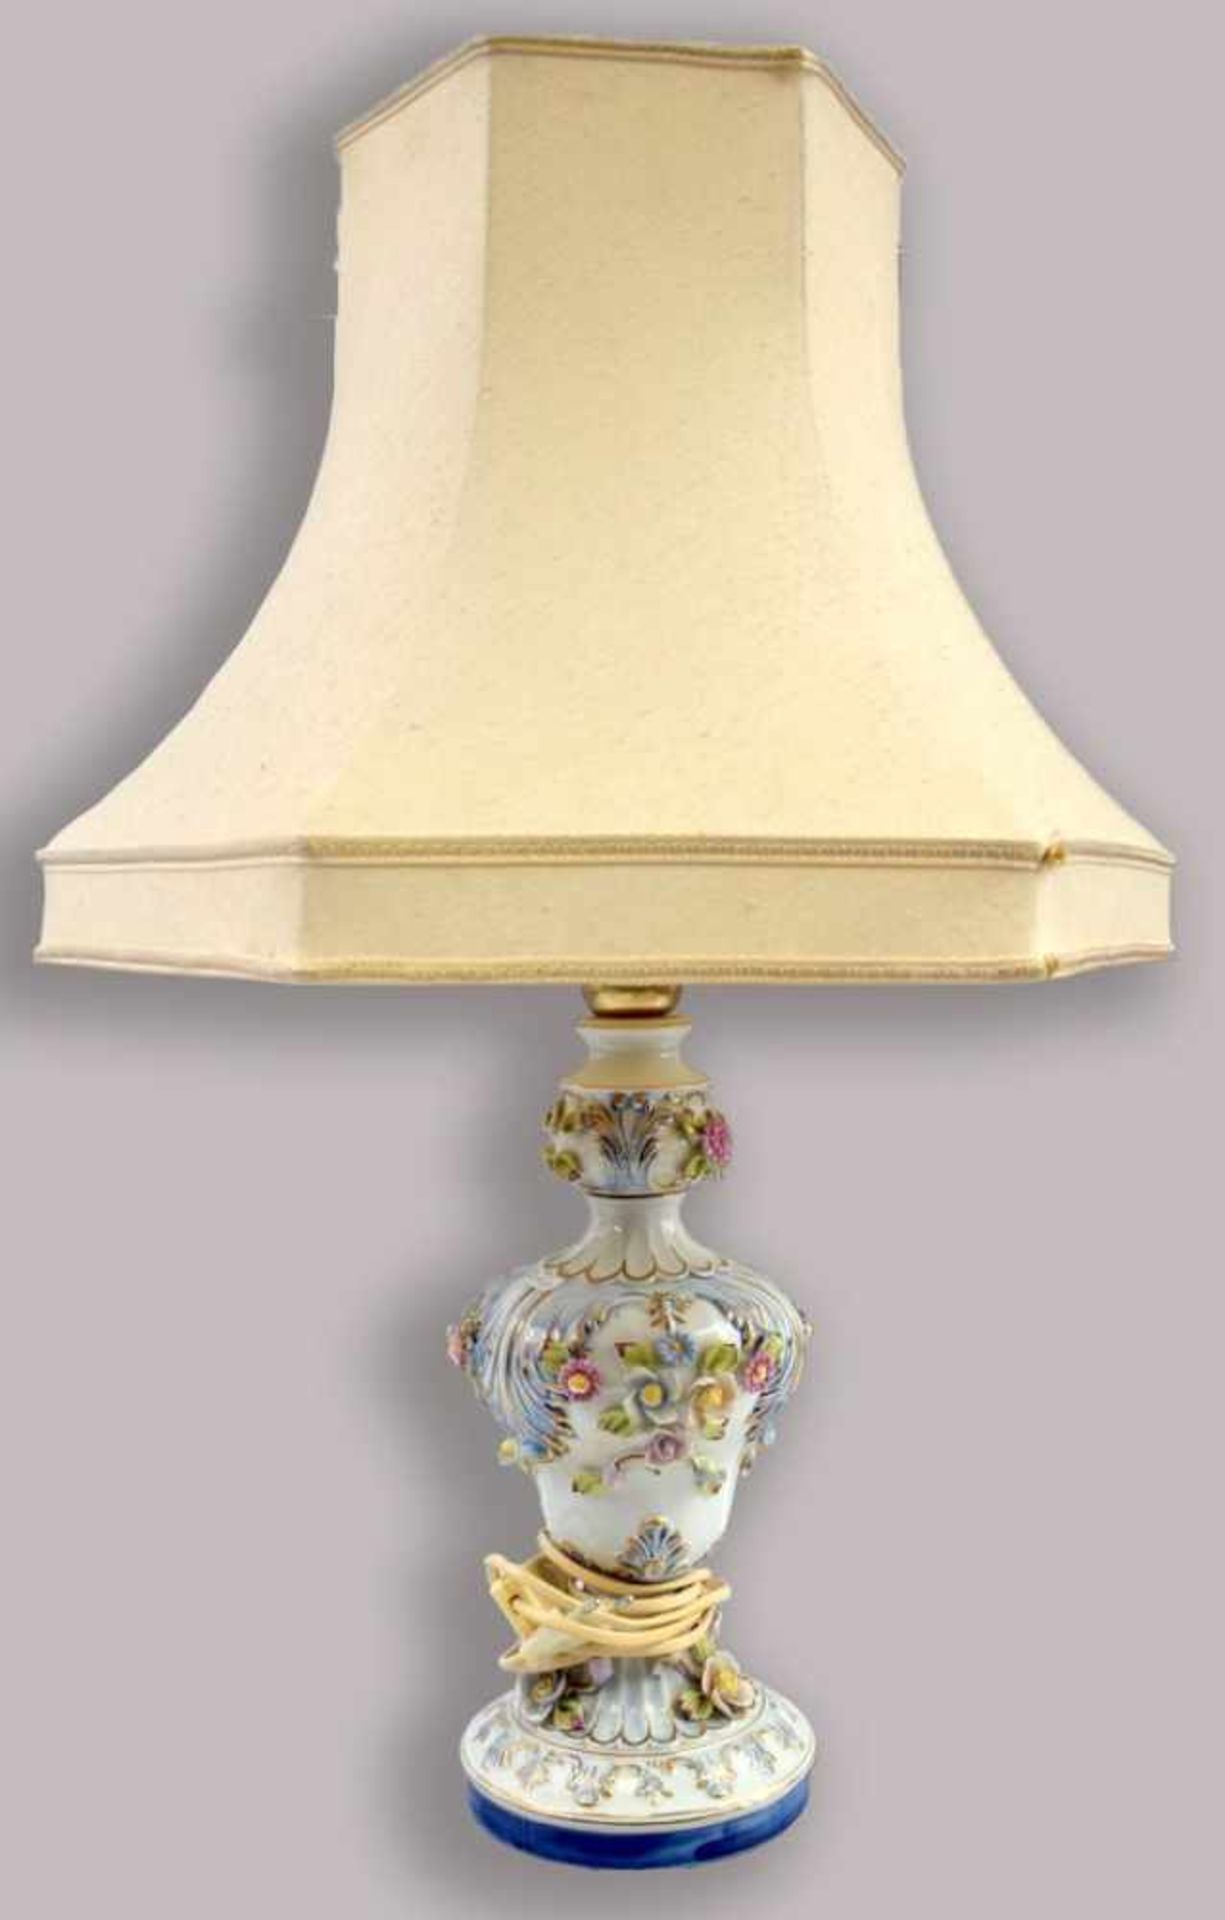 Tischlampe 1-lichtig, runder Porzellanfuß und -schaft, mit plastischen Blüten bunt verziert,